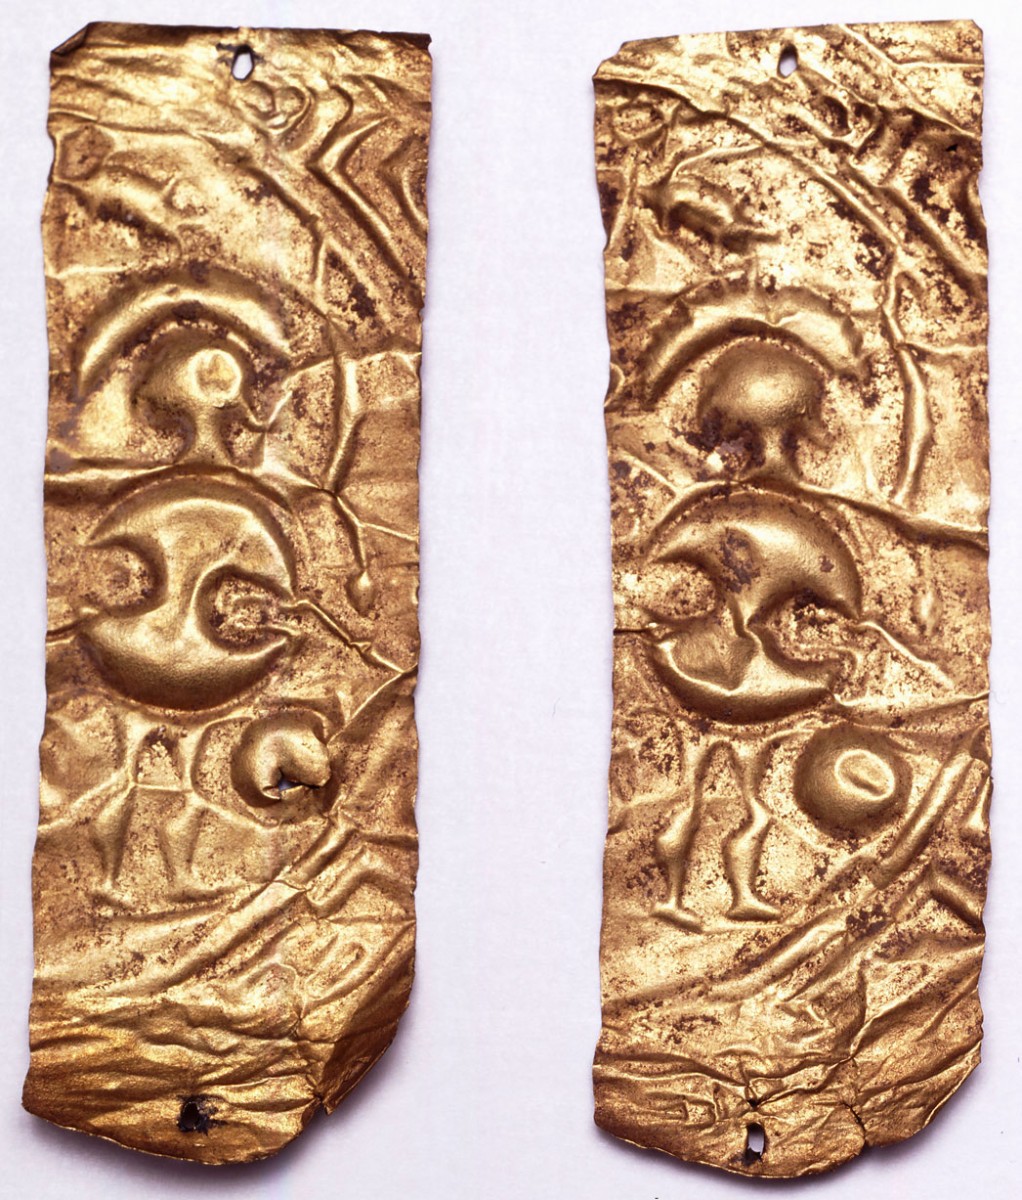 Χρυσές ταινίες διακοσμημένες με εμπίεστες μορφές πολεμιστών, 9ος-8ος αι. π.Χ. Συλλογή Ν.Π. Γουλανδρή, αρ. 607. Μουσείο Κυκλαδικής Τέχνης, Αθήνα.